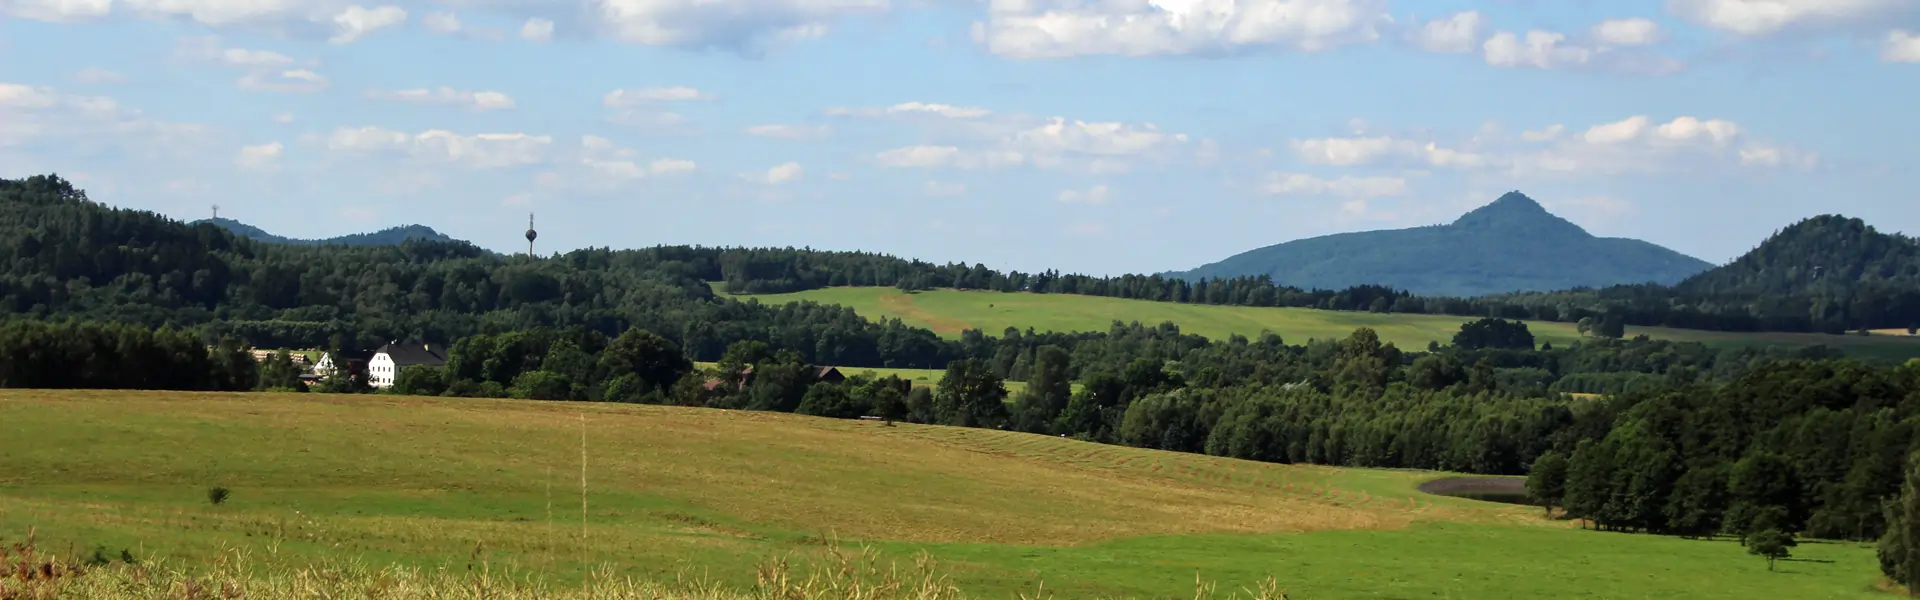 Blick zum Aussichtsberg Jeschken in Böhmen